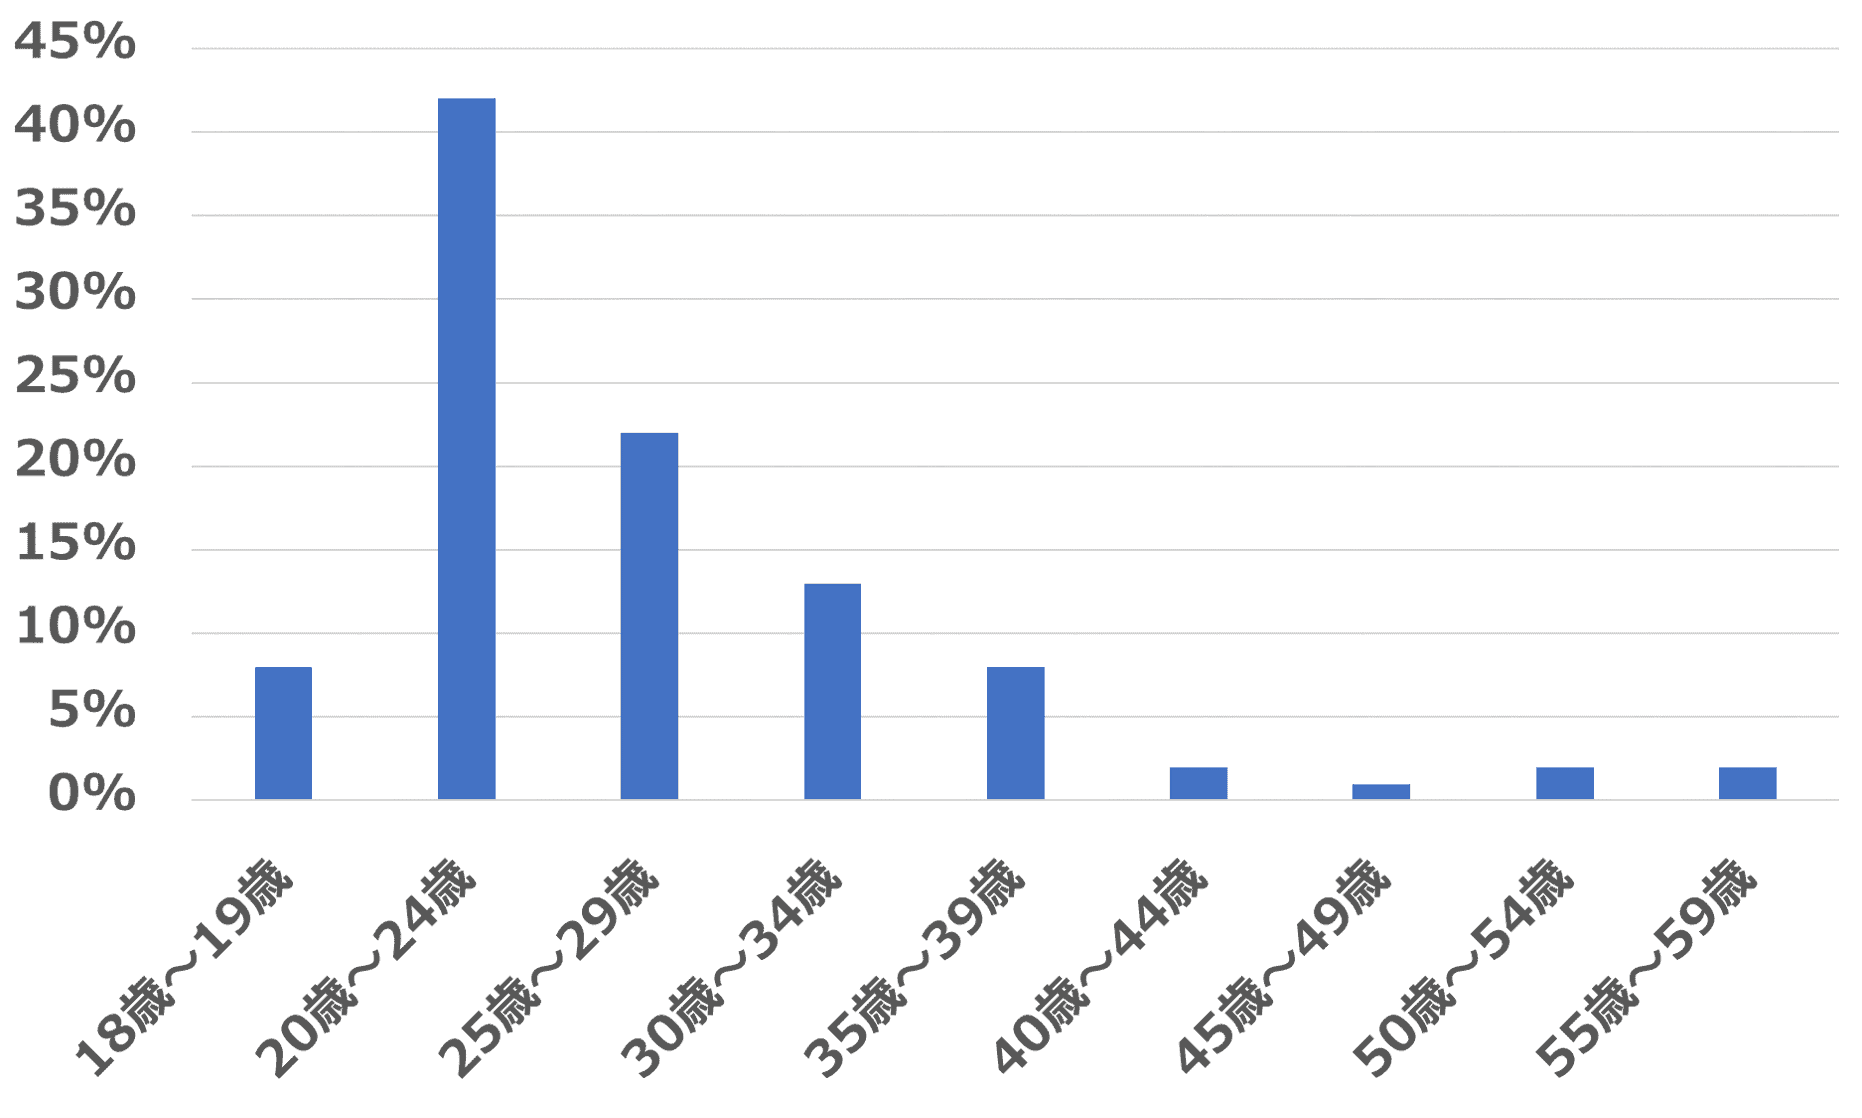 タップルの年代ごとの女性ログインユーザー数を示したグラフ